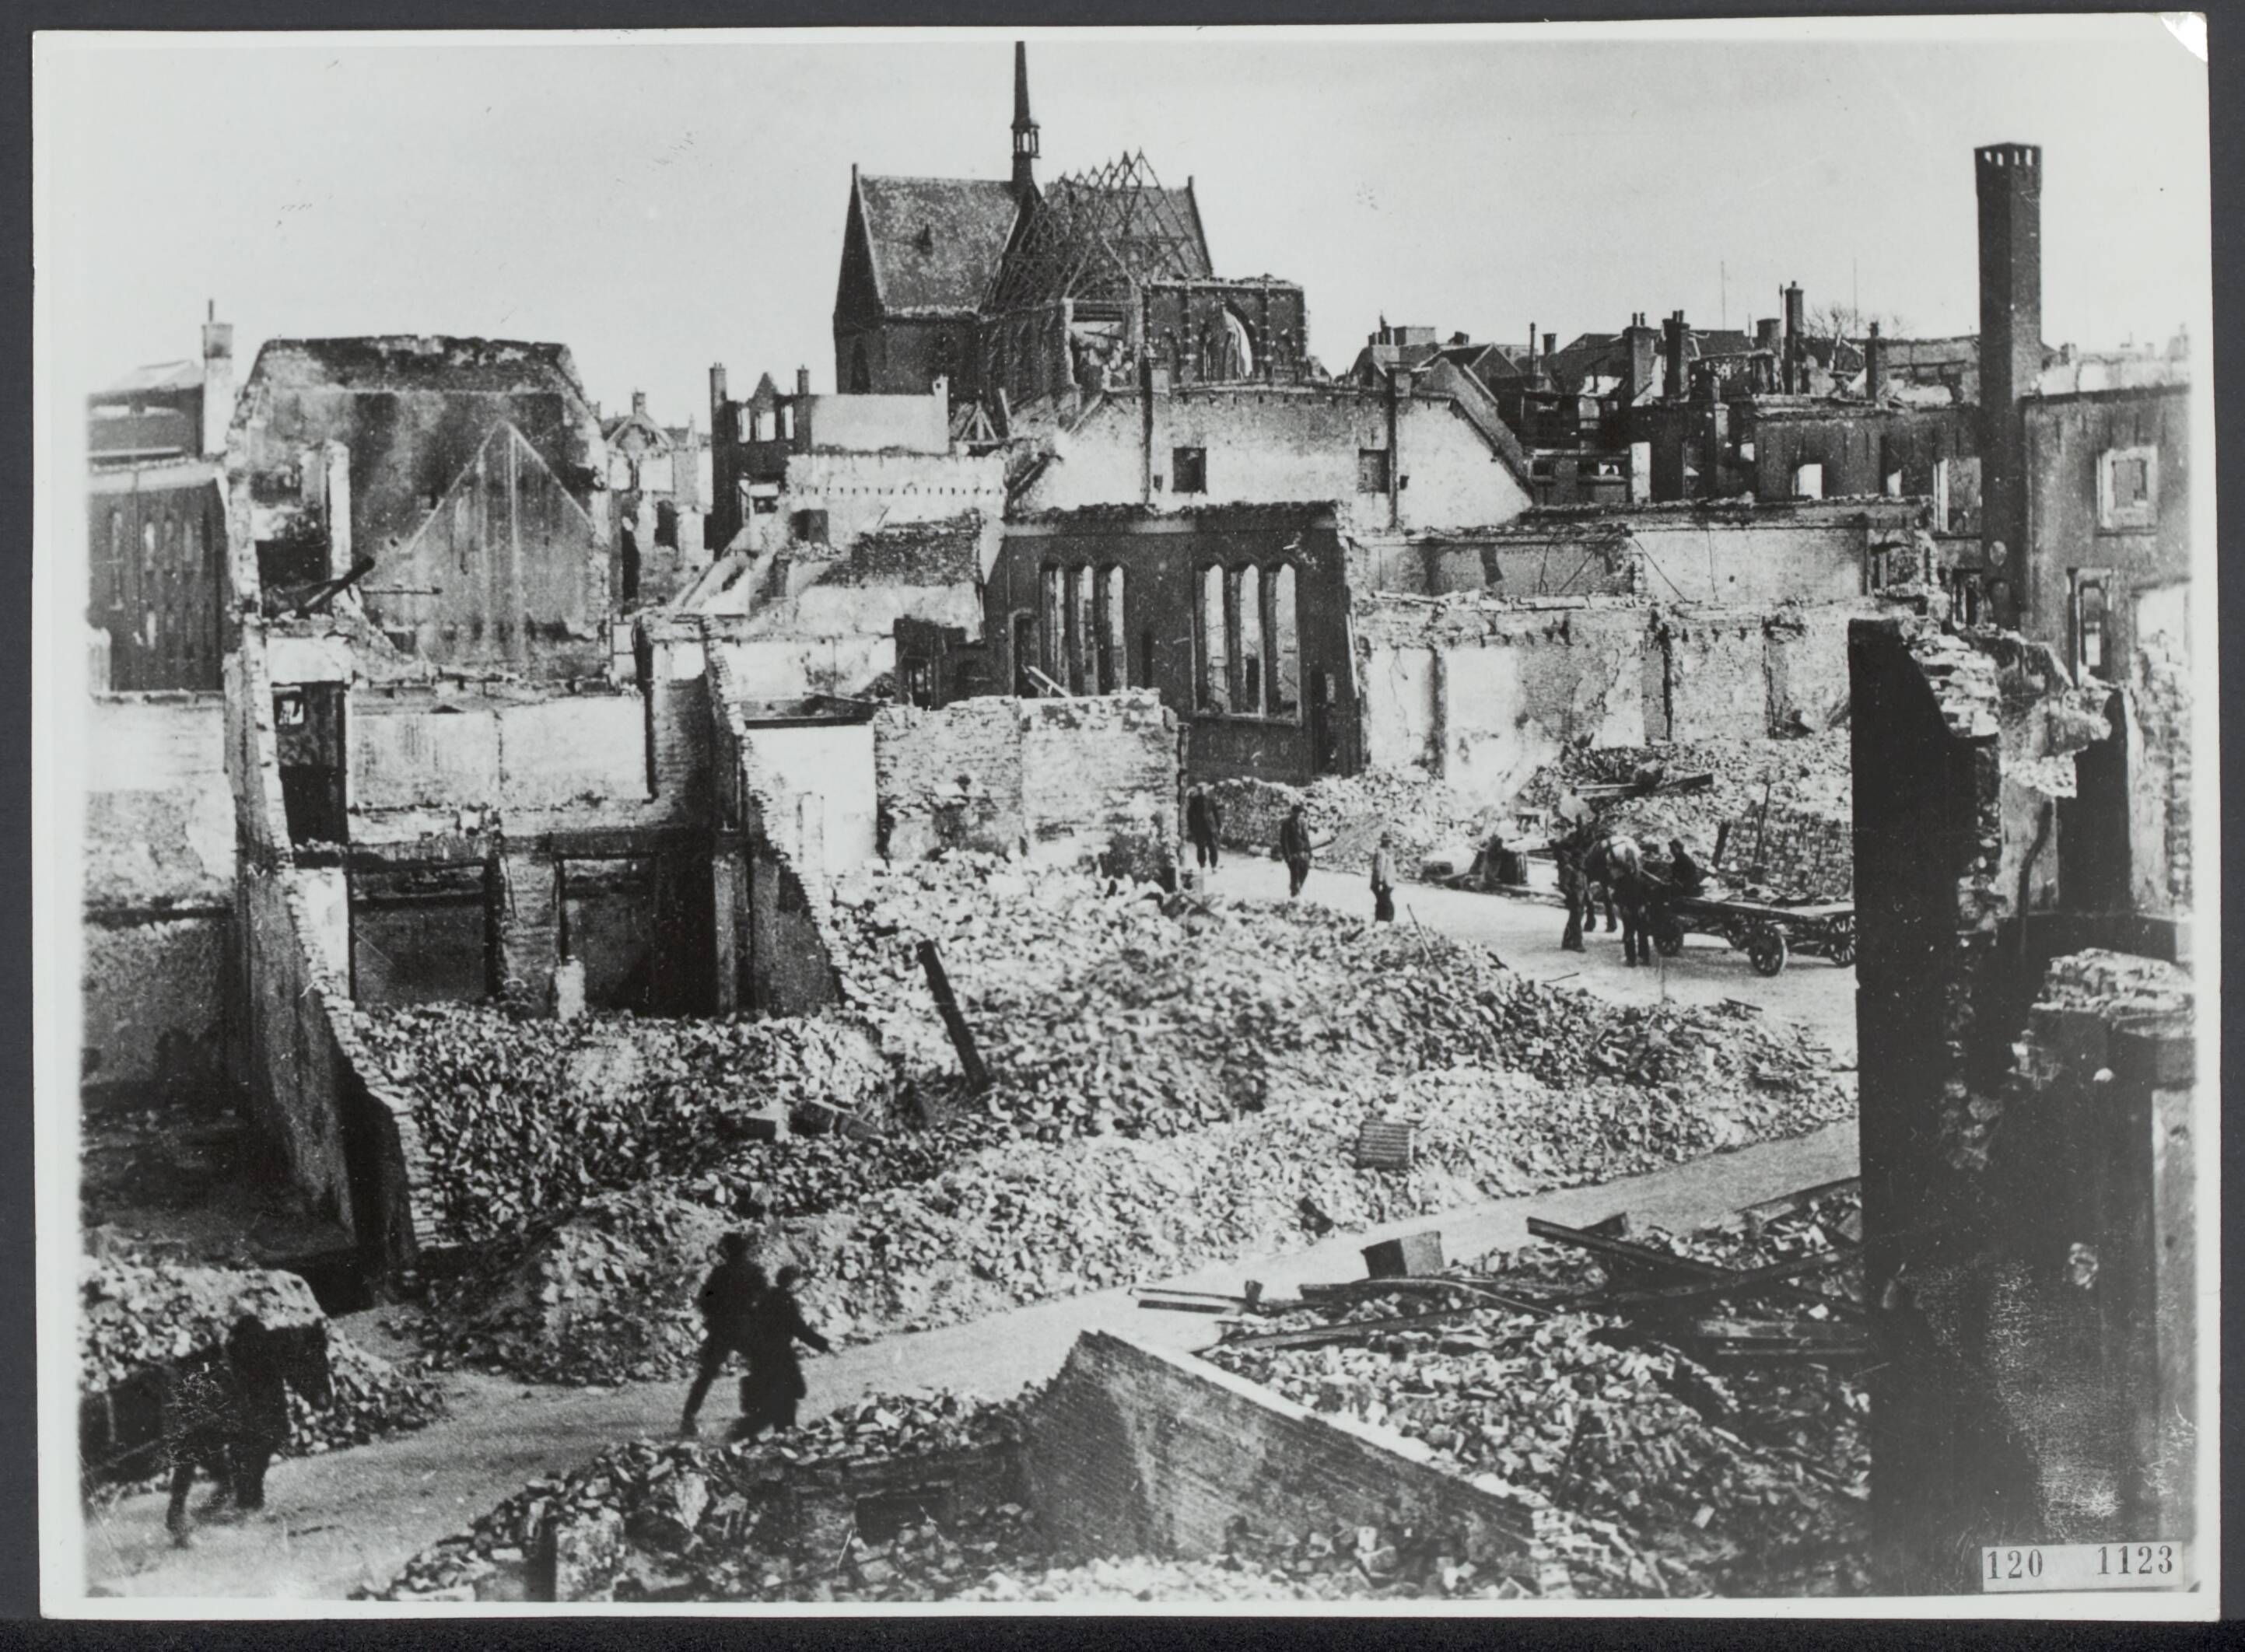 1944: Het huidige Plein 1944 te Nijmegen ligt in puin. Na de oorlog, moest er ook emotioneel en politiek puin geruimd worden in Nederland.